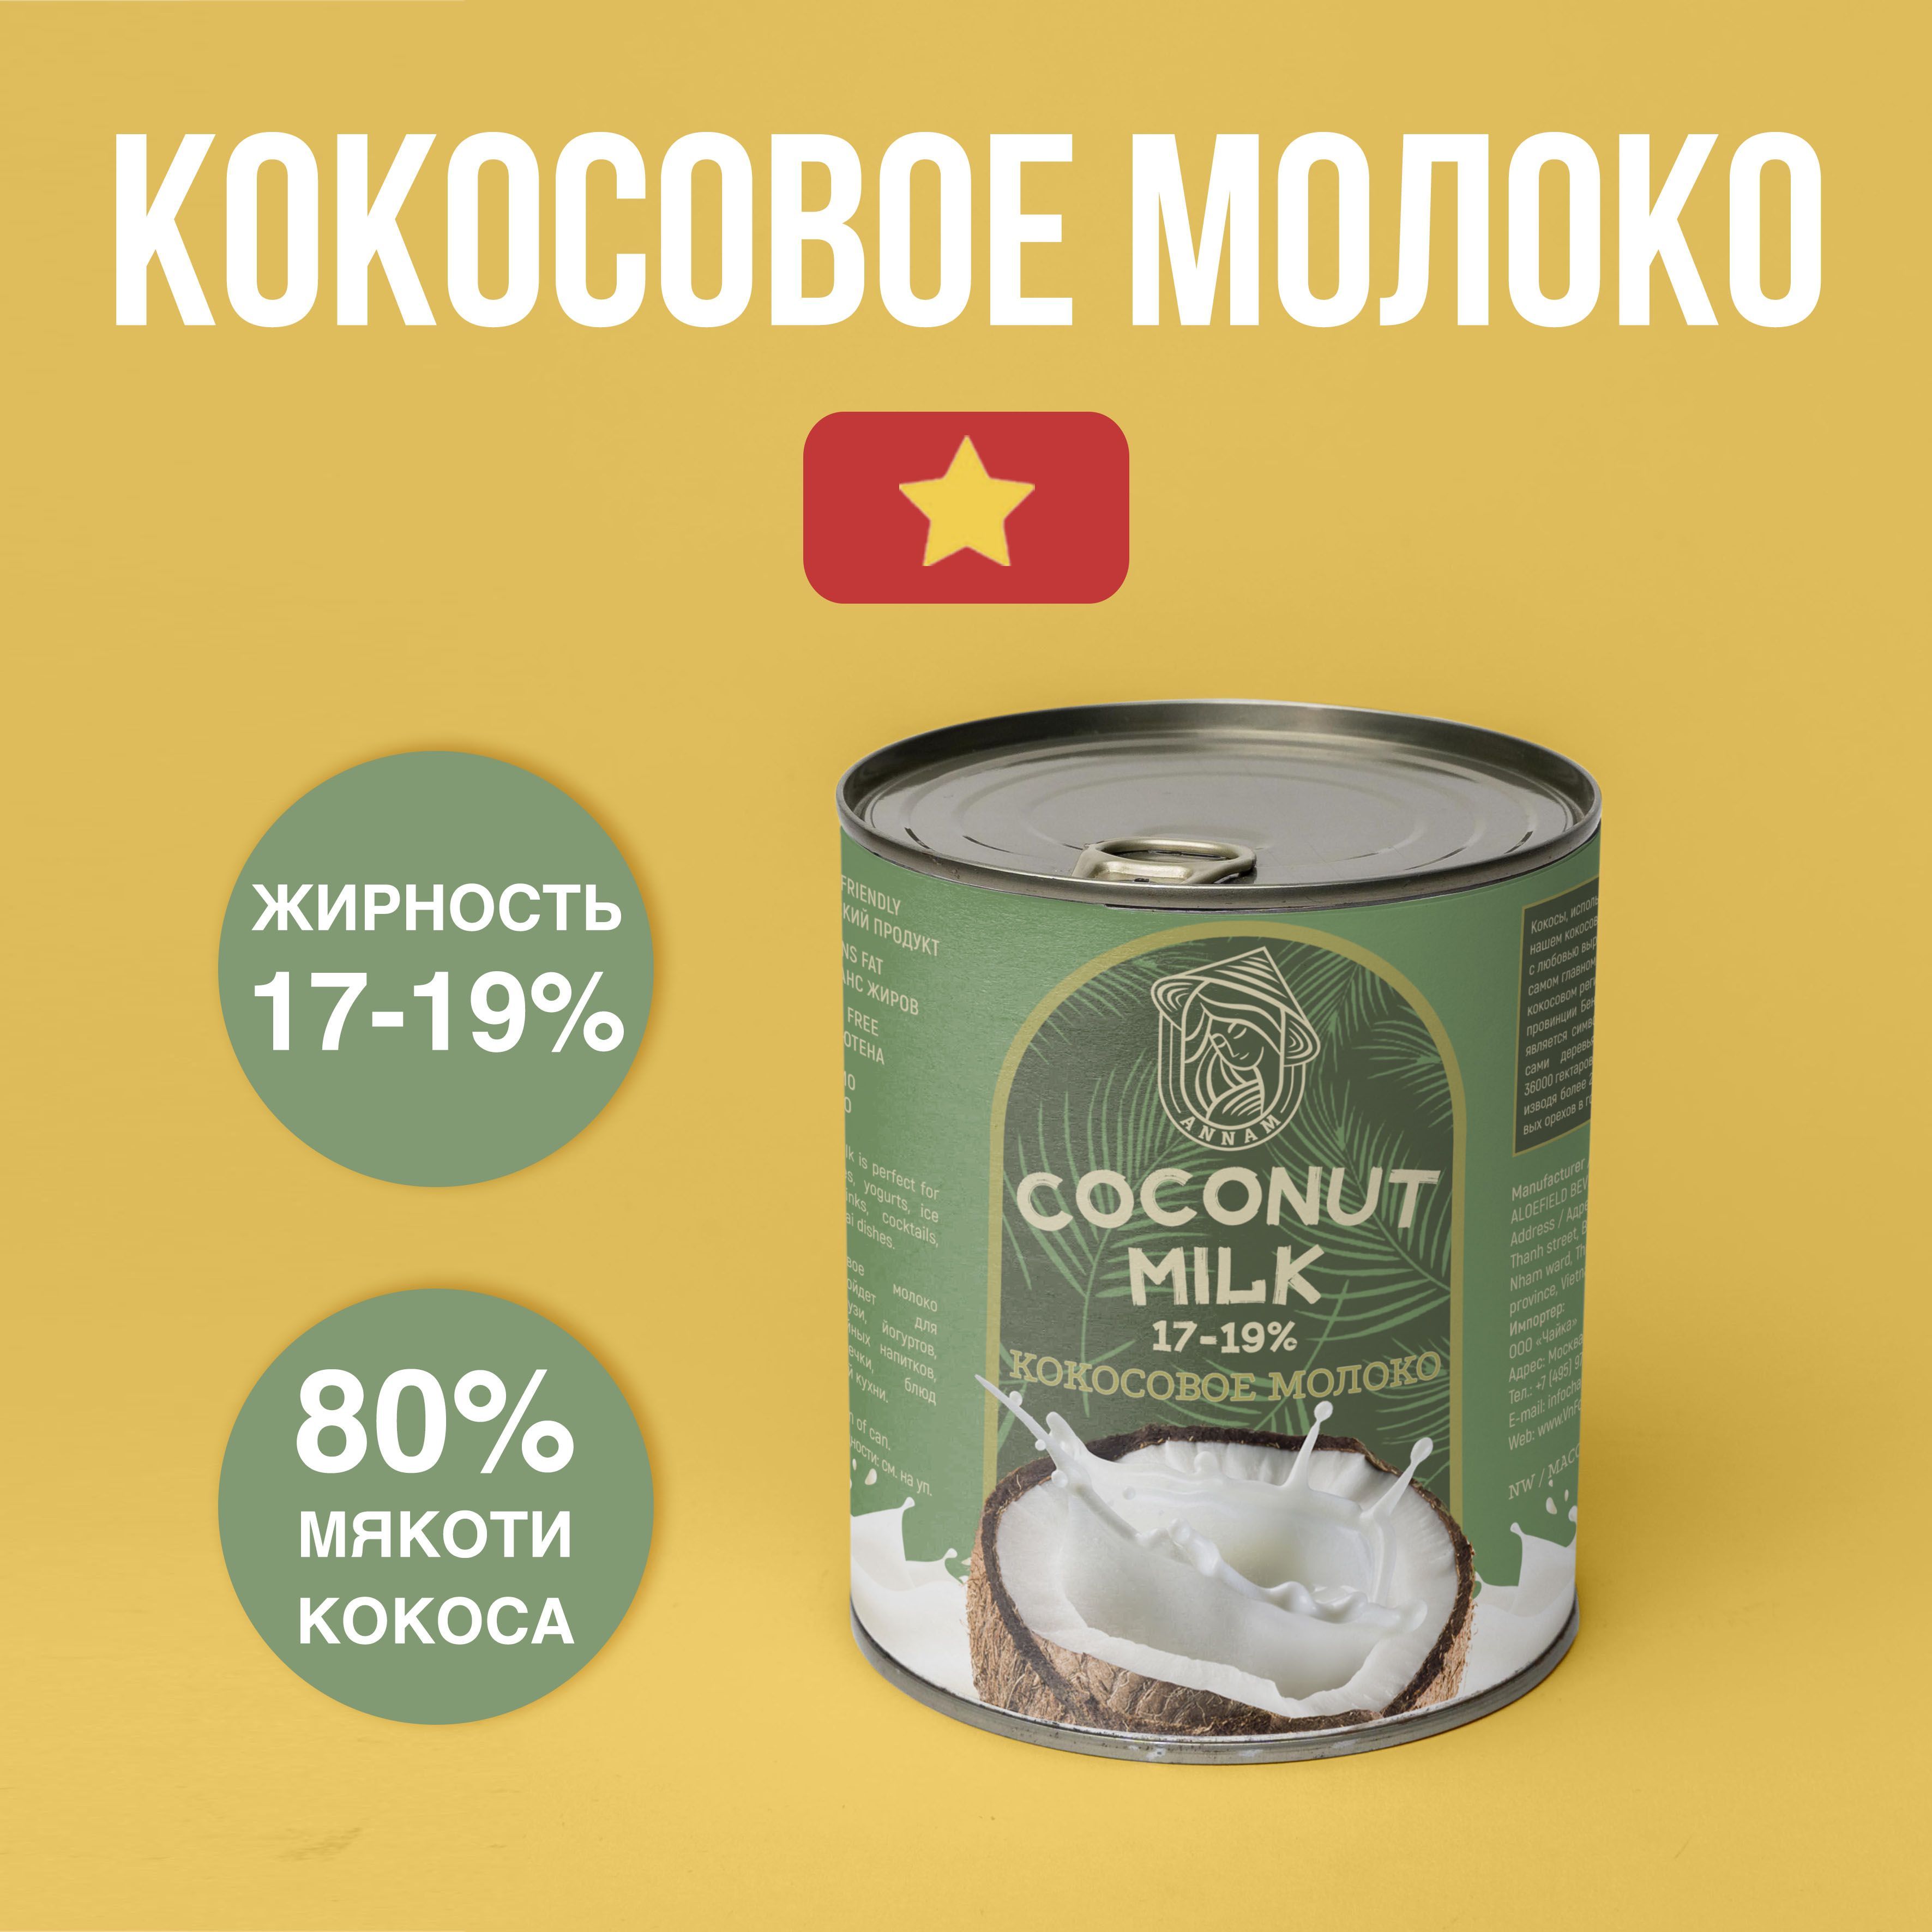 КокосовоемолокоANNAM,жирность17-19%,400г